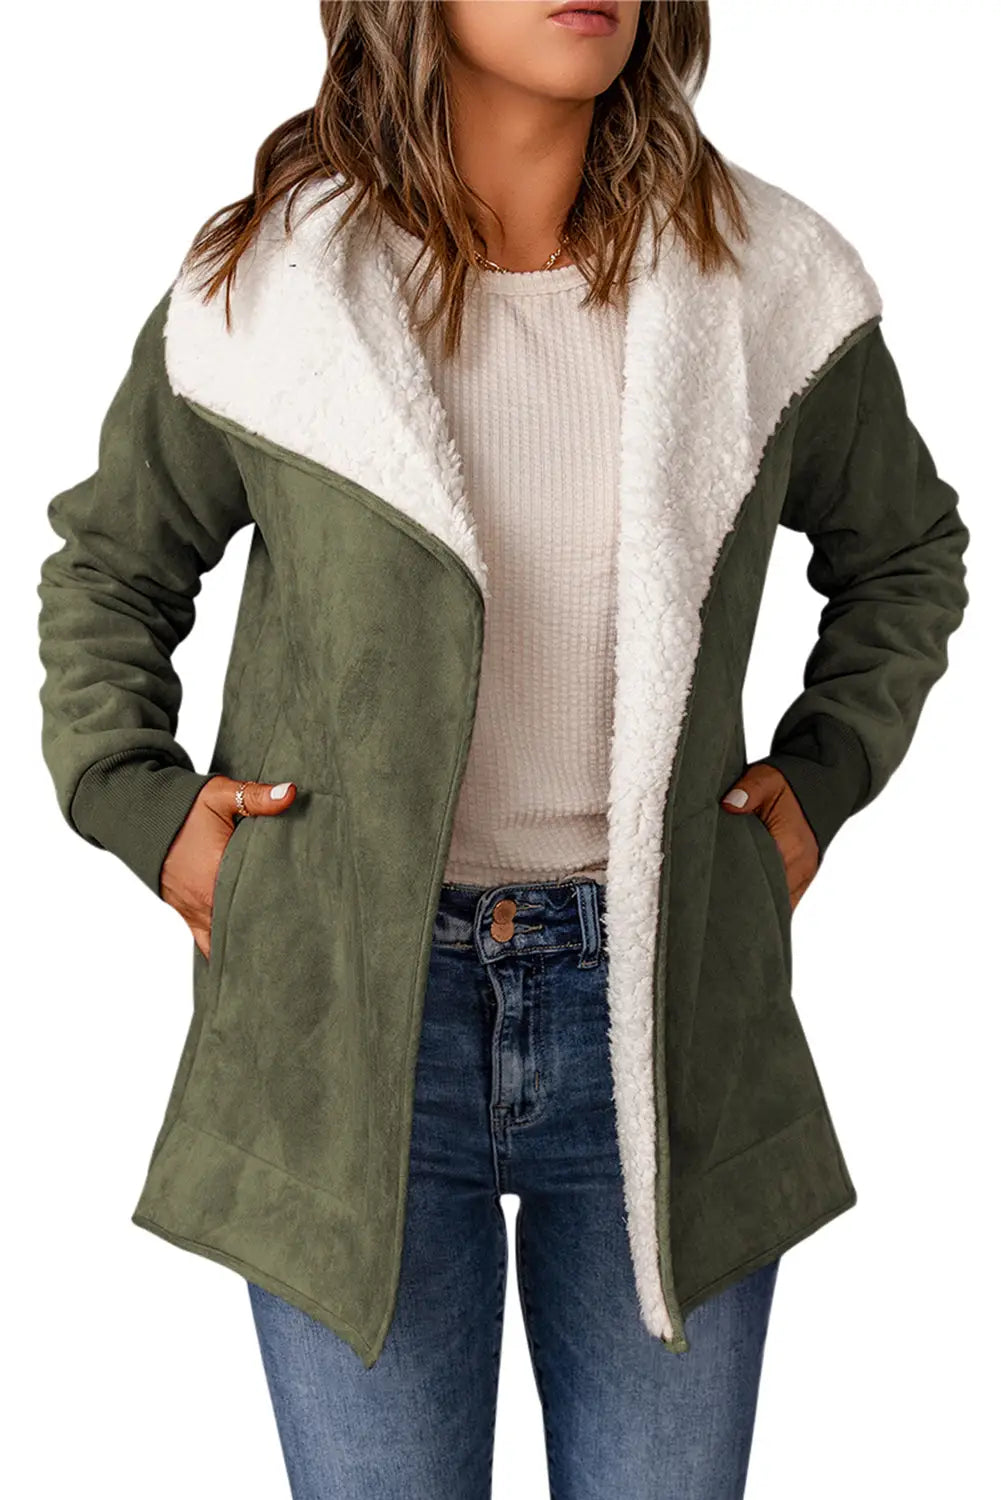 Green faux suede fleece lined open front jacket - outerwear